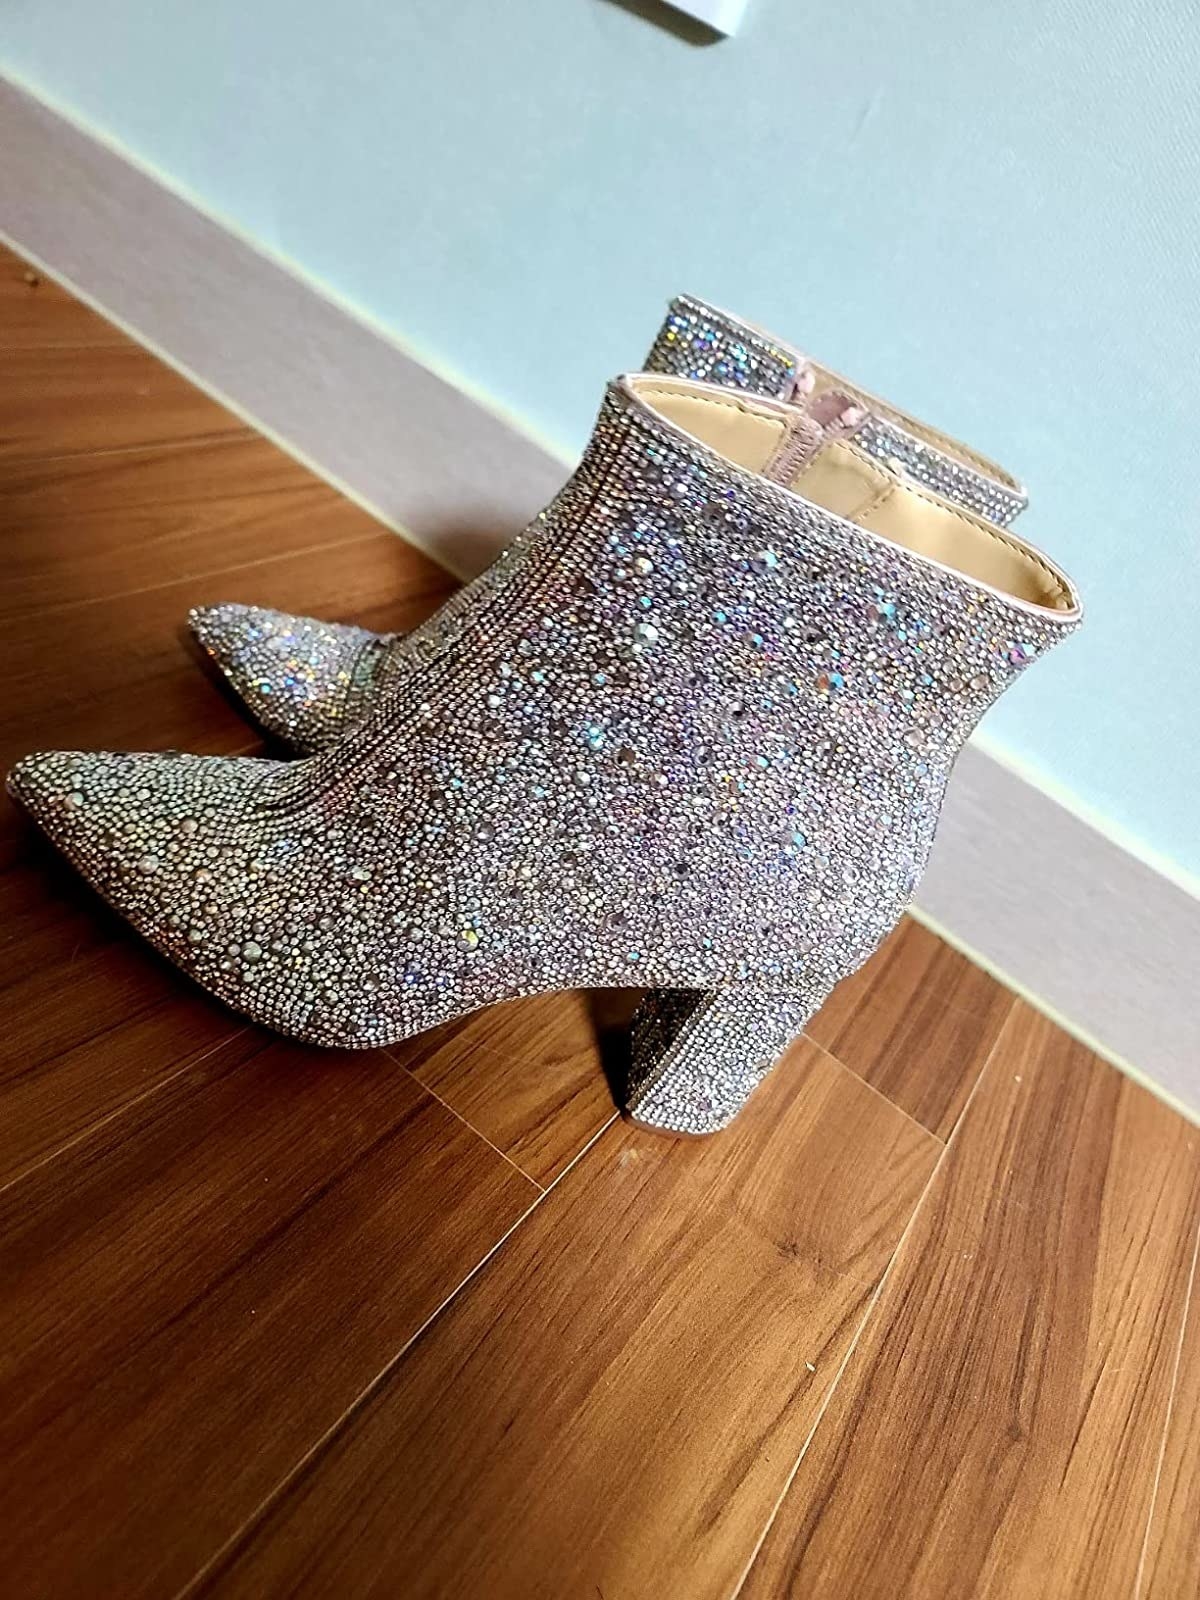 Glittery boots on hardwood floor